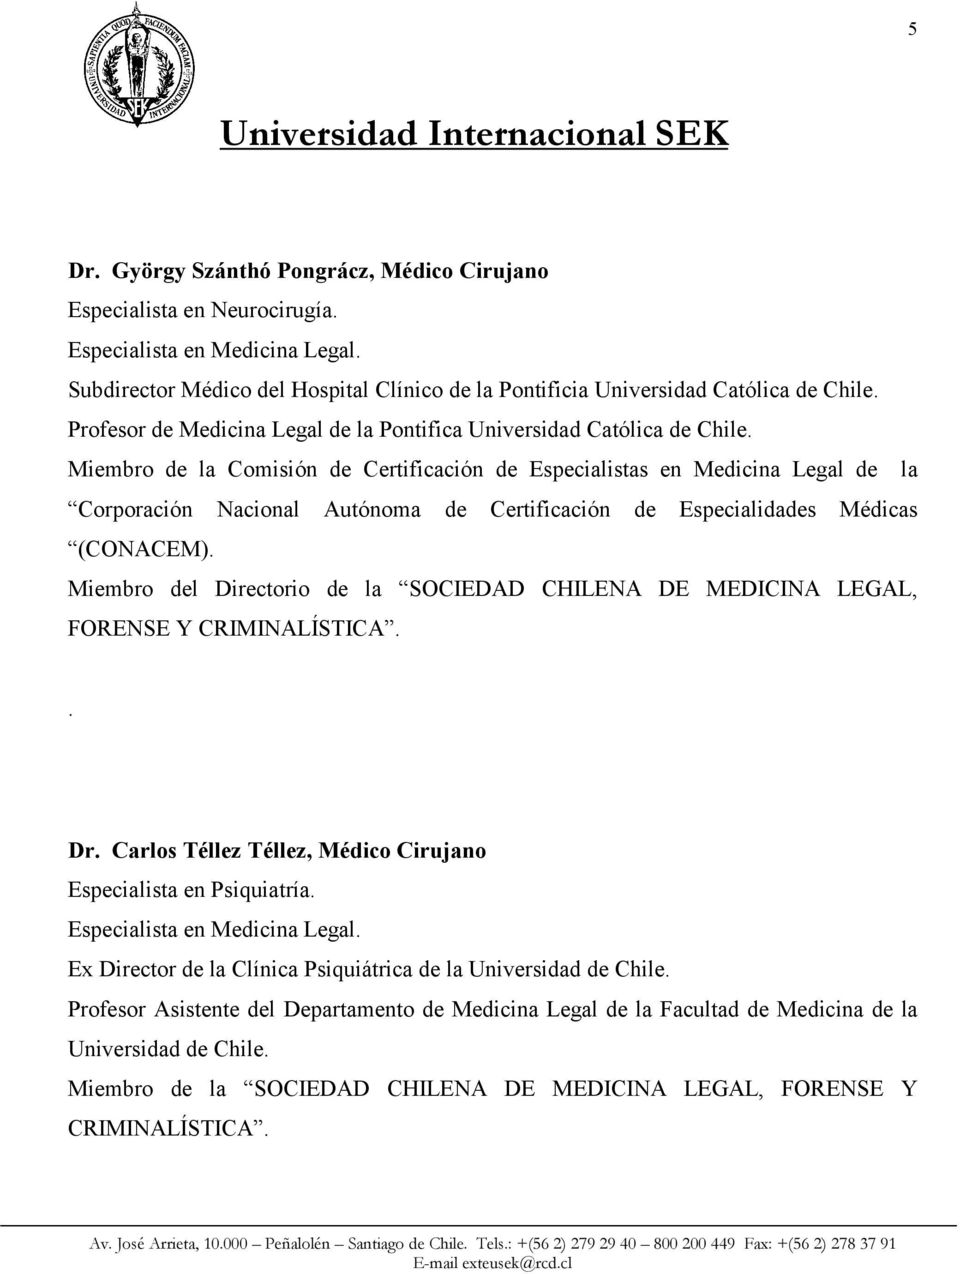 Miembro de la Comisión de Certificación de Especialistas en Medicina Legal de la Corporación Nacional Autónoma de Certificación de Especialidades Médicas (CONACEM).